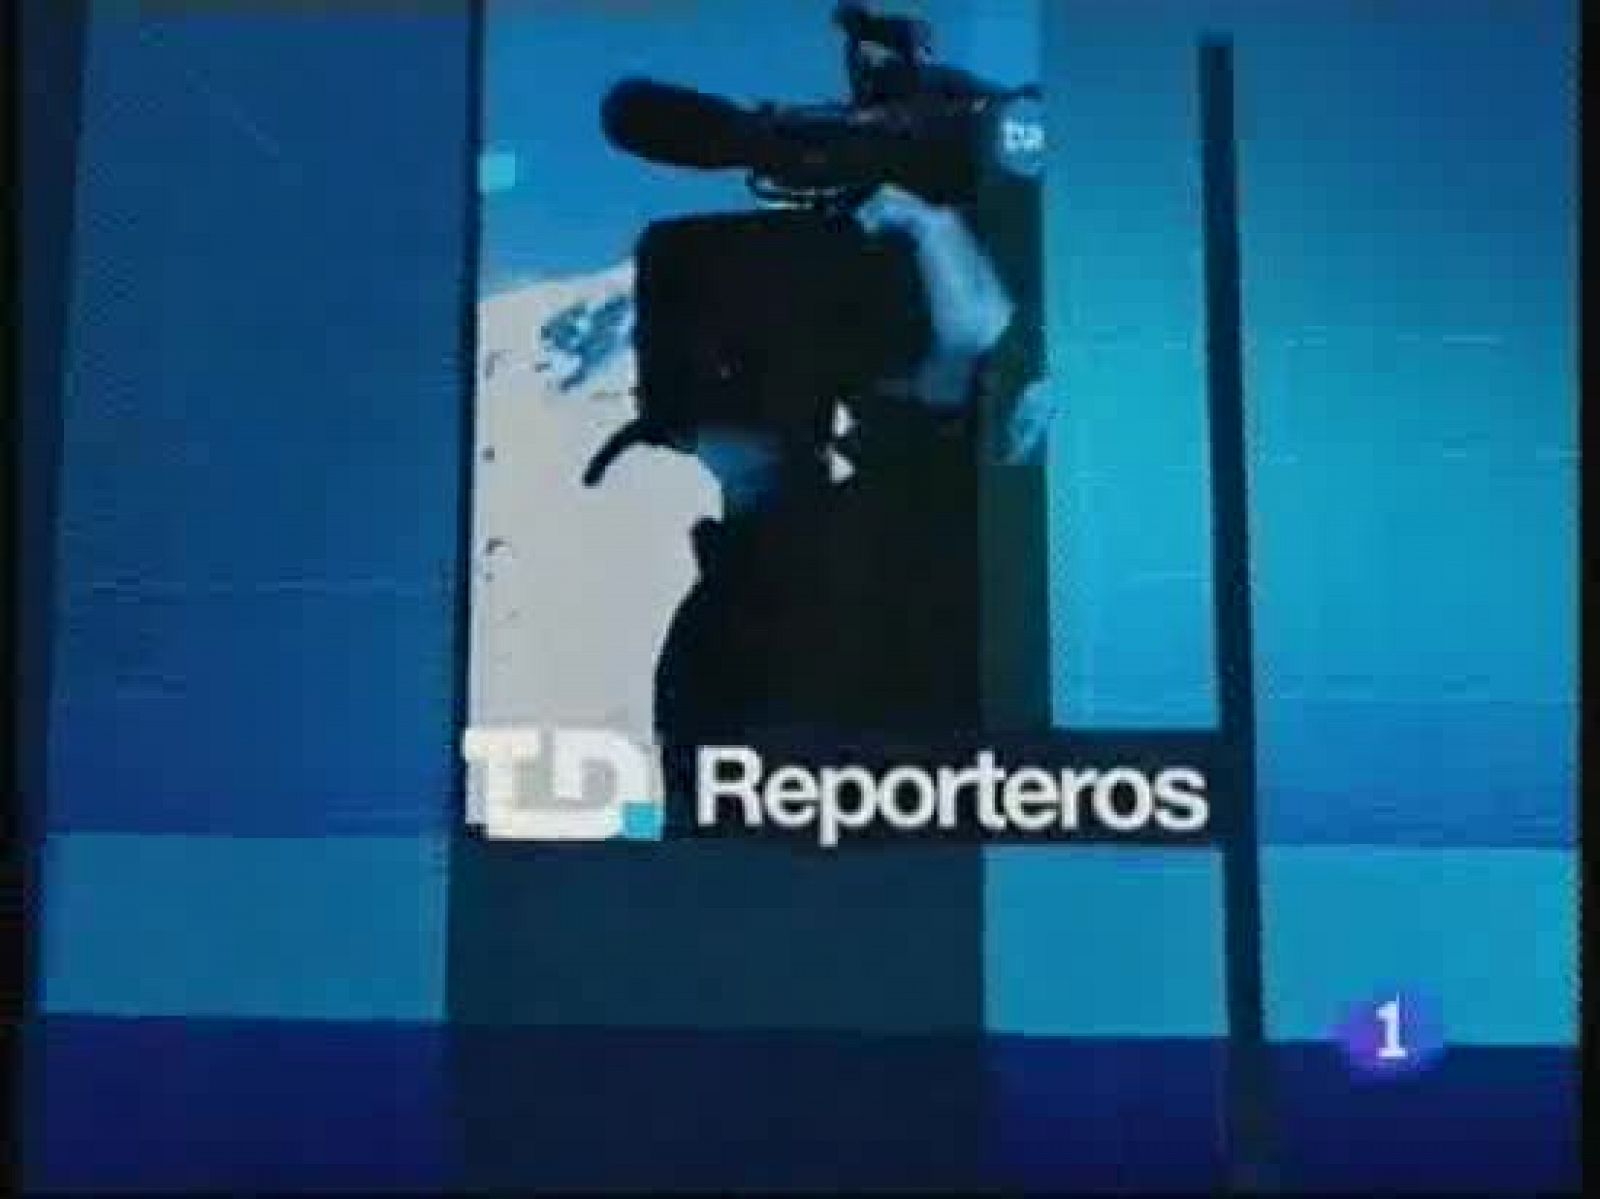 Reporteros del telediario - Las cámaras de videovigilancia, armas de doble filo